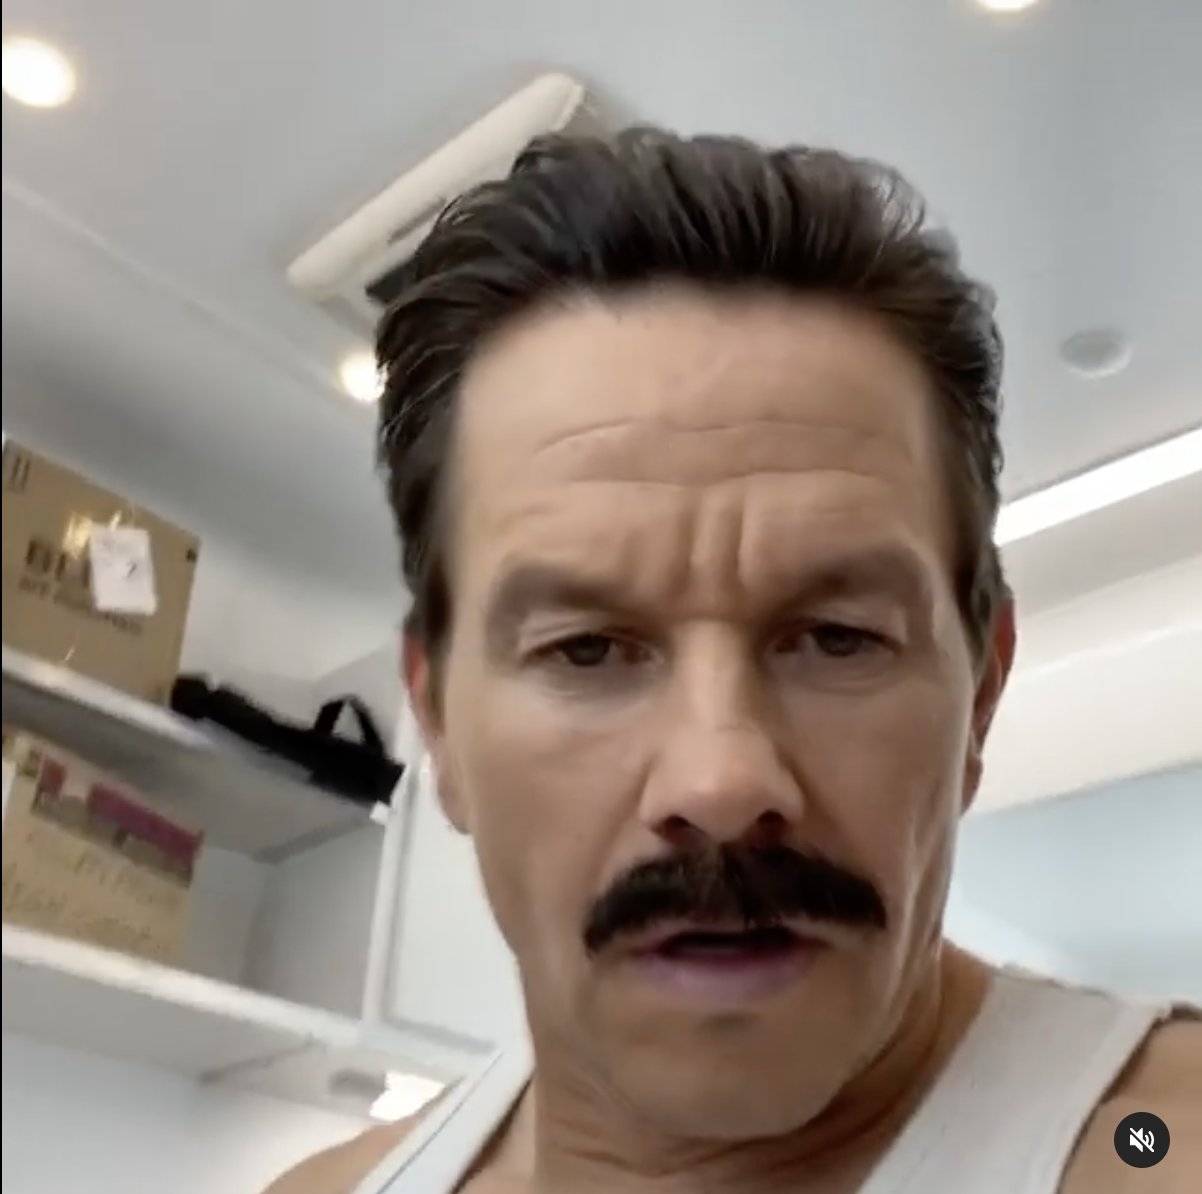 ENTREVISTA: Mark Wahlberg fala sobre Uncharted, Tom Holland e bigodes